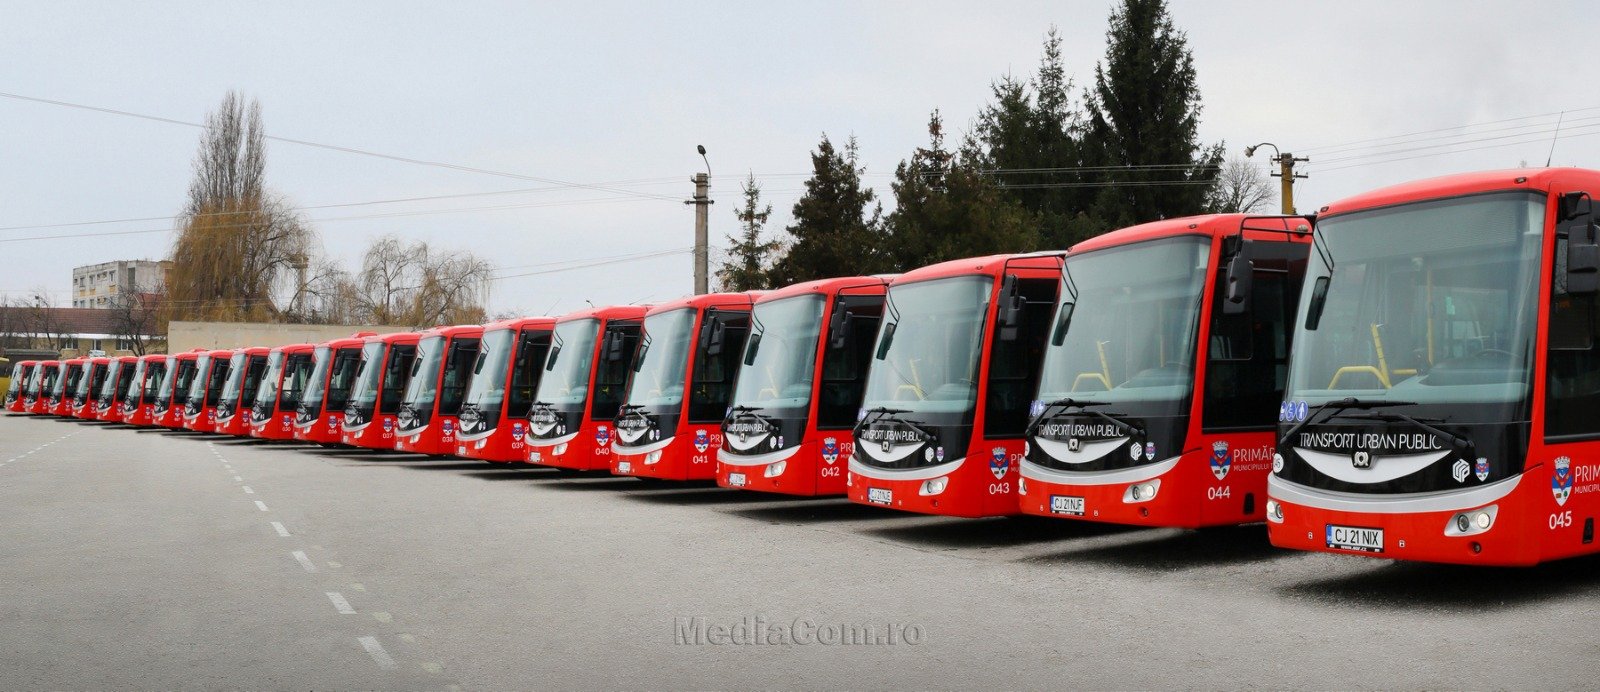 𝐓𝐮𝐫𝐝𝐚 𝐯𝐚 𝐢𝐧𝐚𝐮𝐠𝐮𝐫𝐚 𝐥𝐮𝐧𝐢 𝐧𝐨𝐮𝐚 𝐜𝐨𝐦𝐩𝐚𝐧𝐢𝐞 𝐝𝐞 𝐭𝐫𝐚𝐧𝐬𝐩𝐨𝐫𝐭 𝐩𝐮𝐛𝐥𝐢𝐜 și noile autobuze electrice